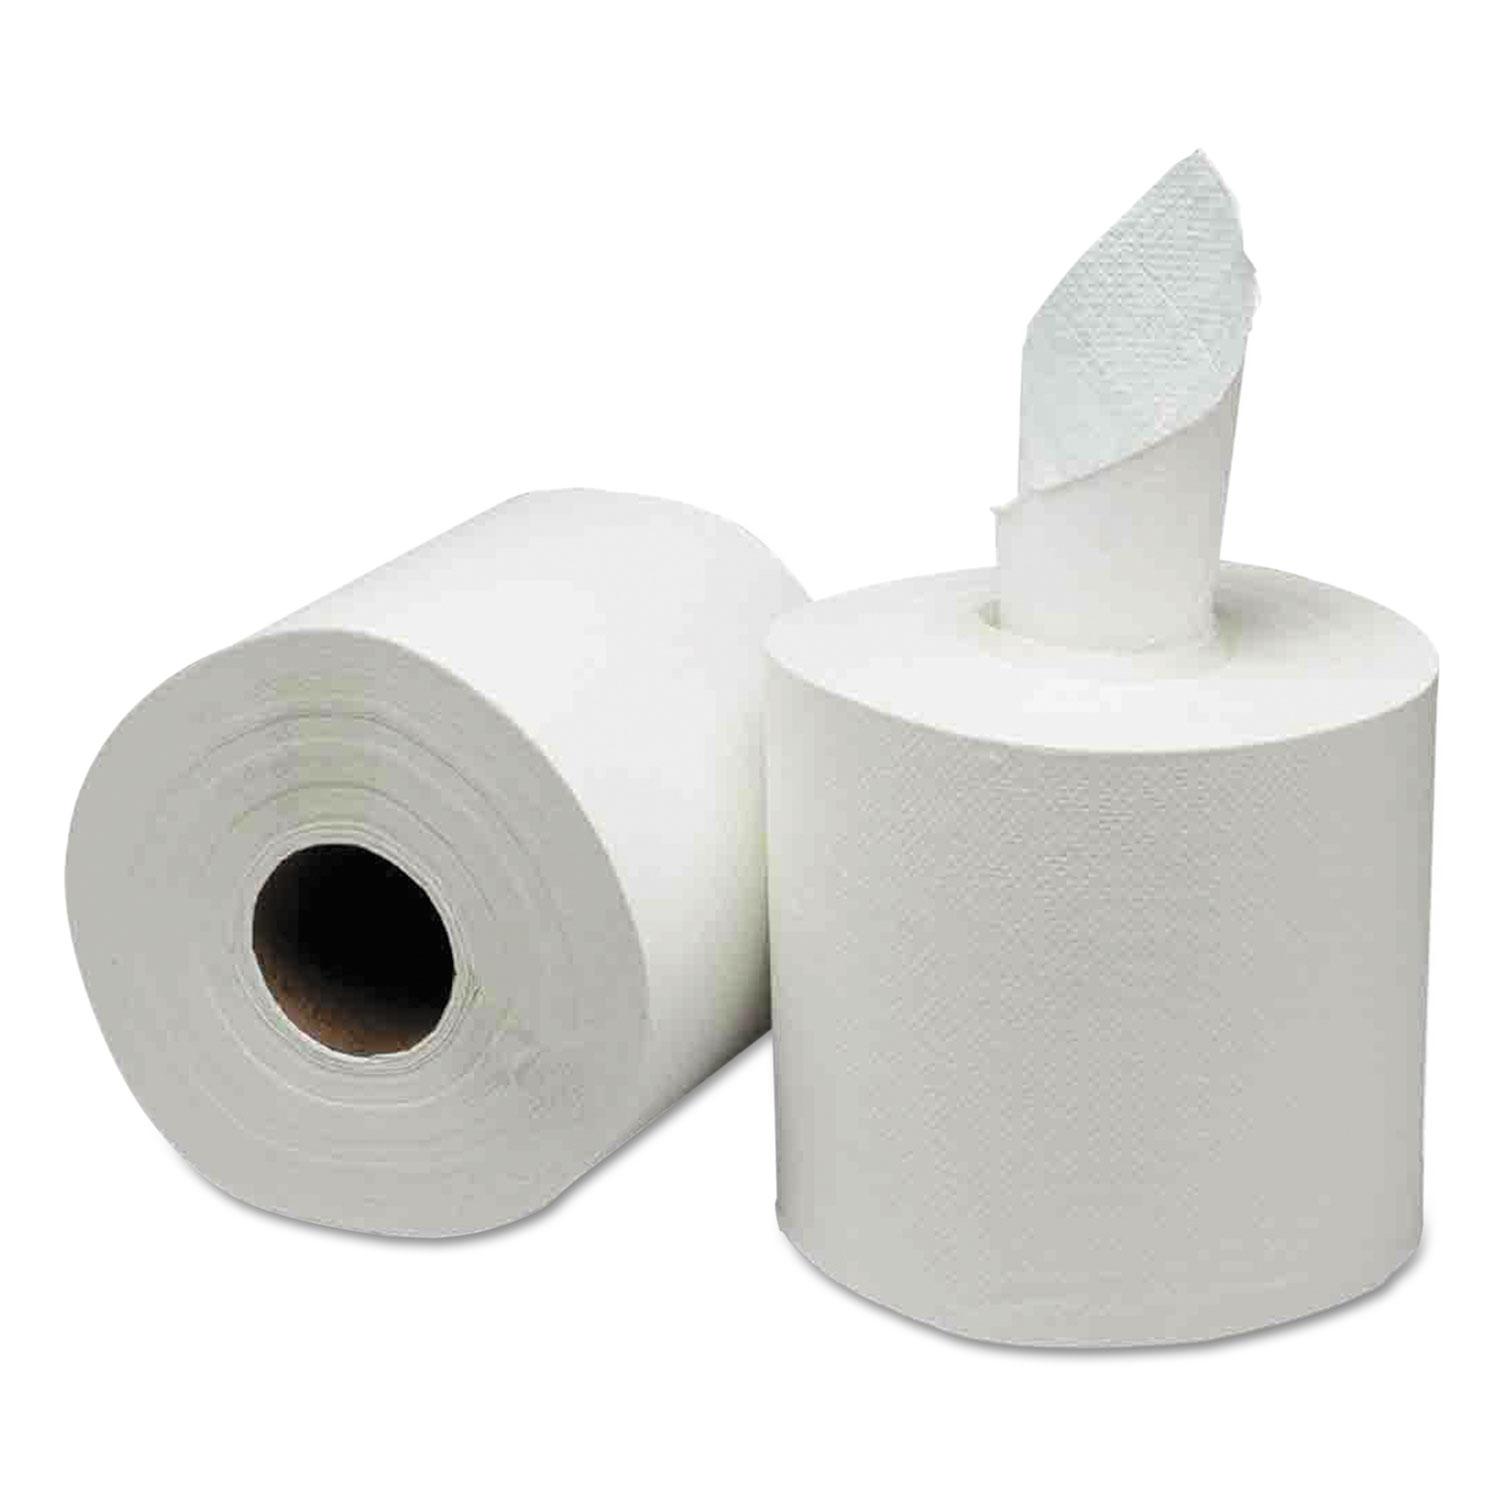  GEN GEN1925 Center-Pull Paper Towels, 8w x 10l, White, 600/Roll, 6 Rolls/Carton (GEN1925) 